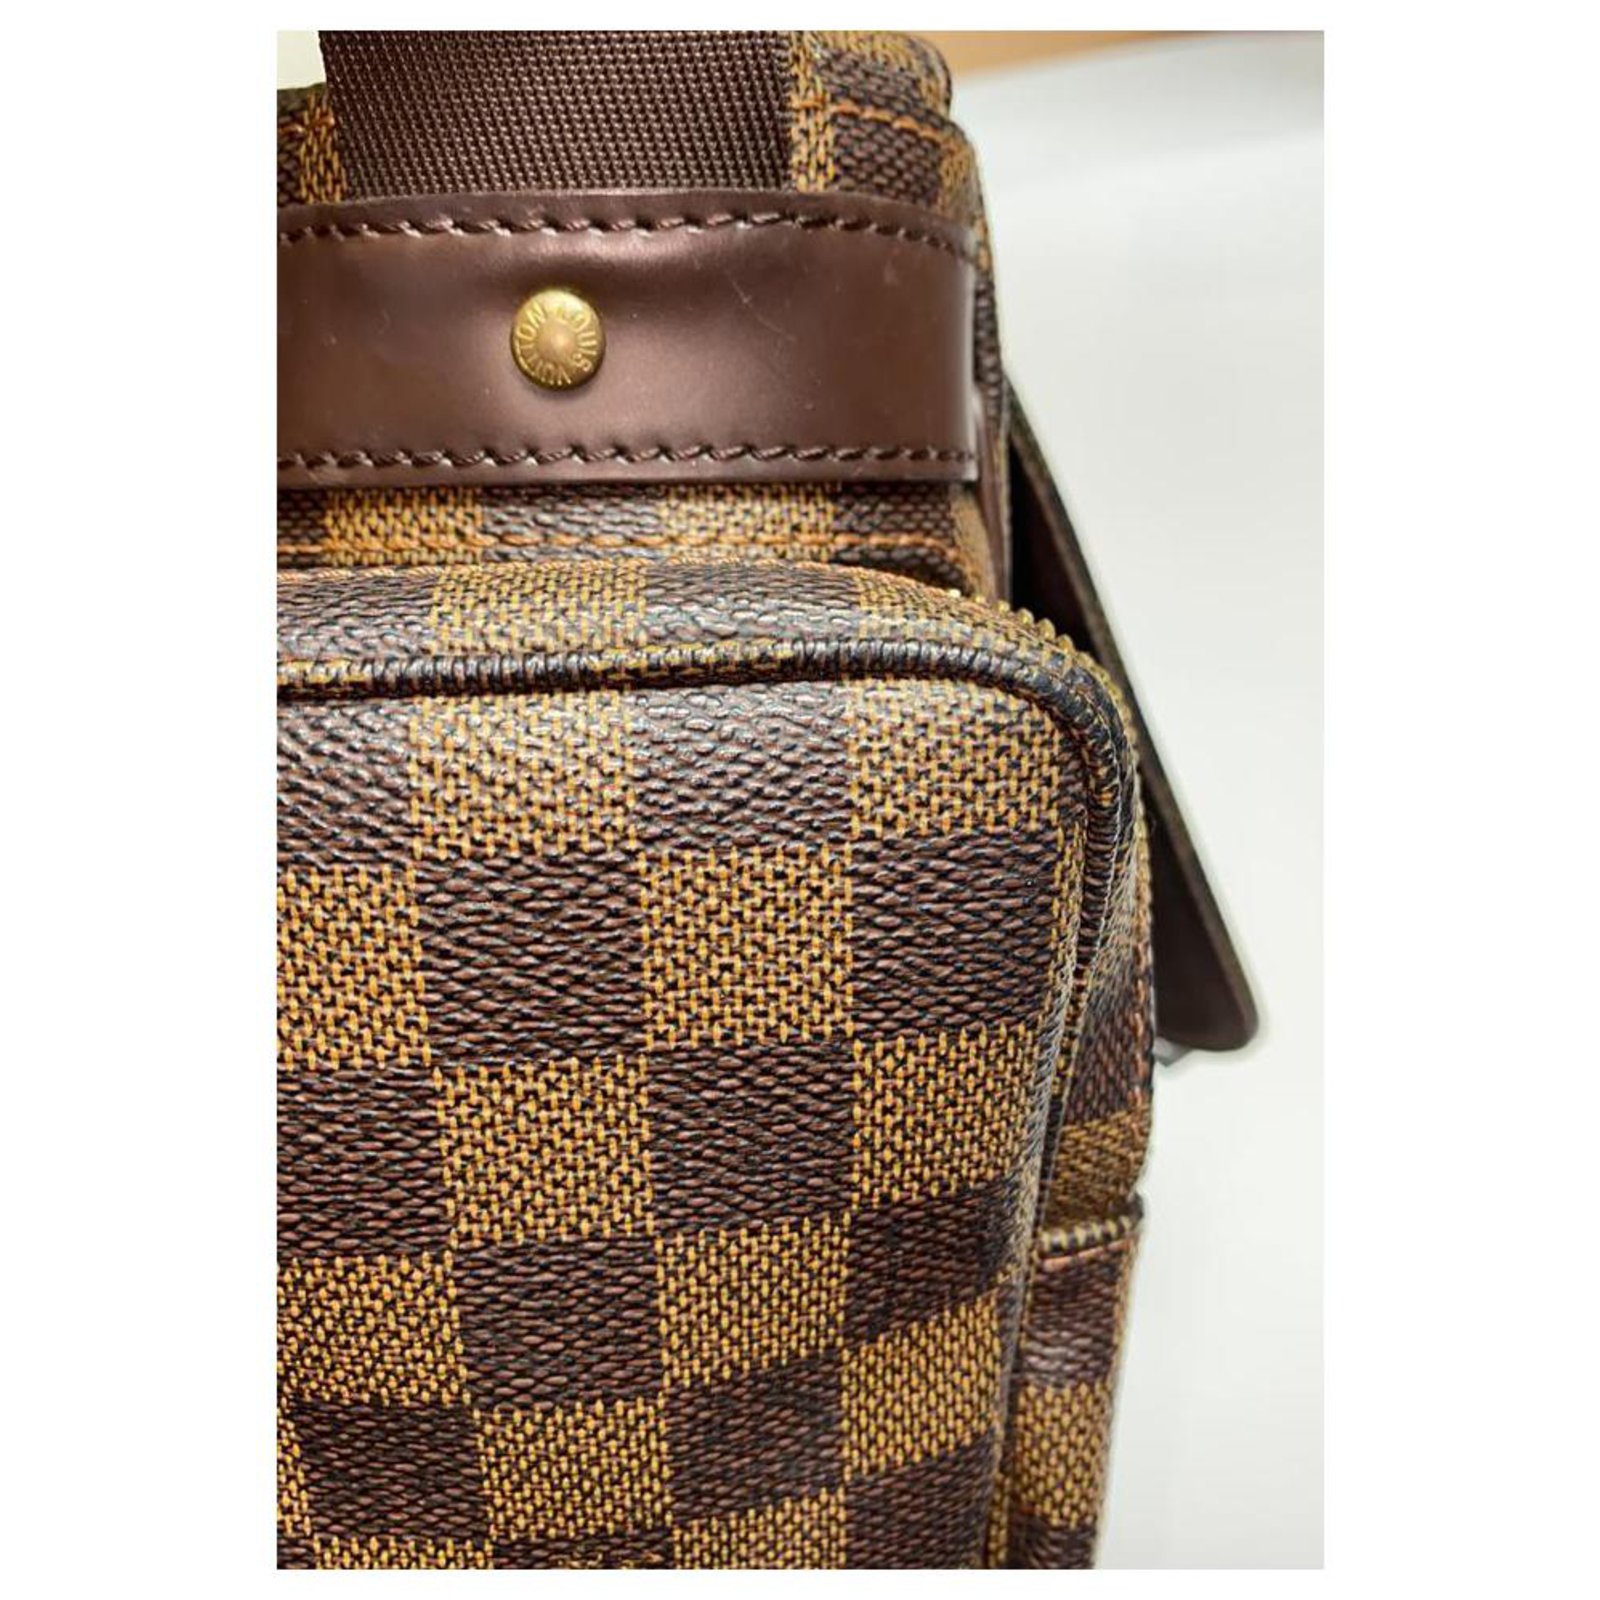 Brown Louis Vuitton Damier Ebene Melville Reporter Crossbody Bag